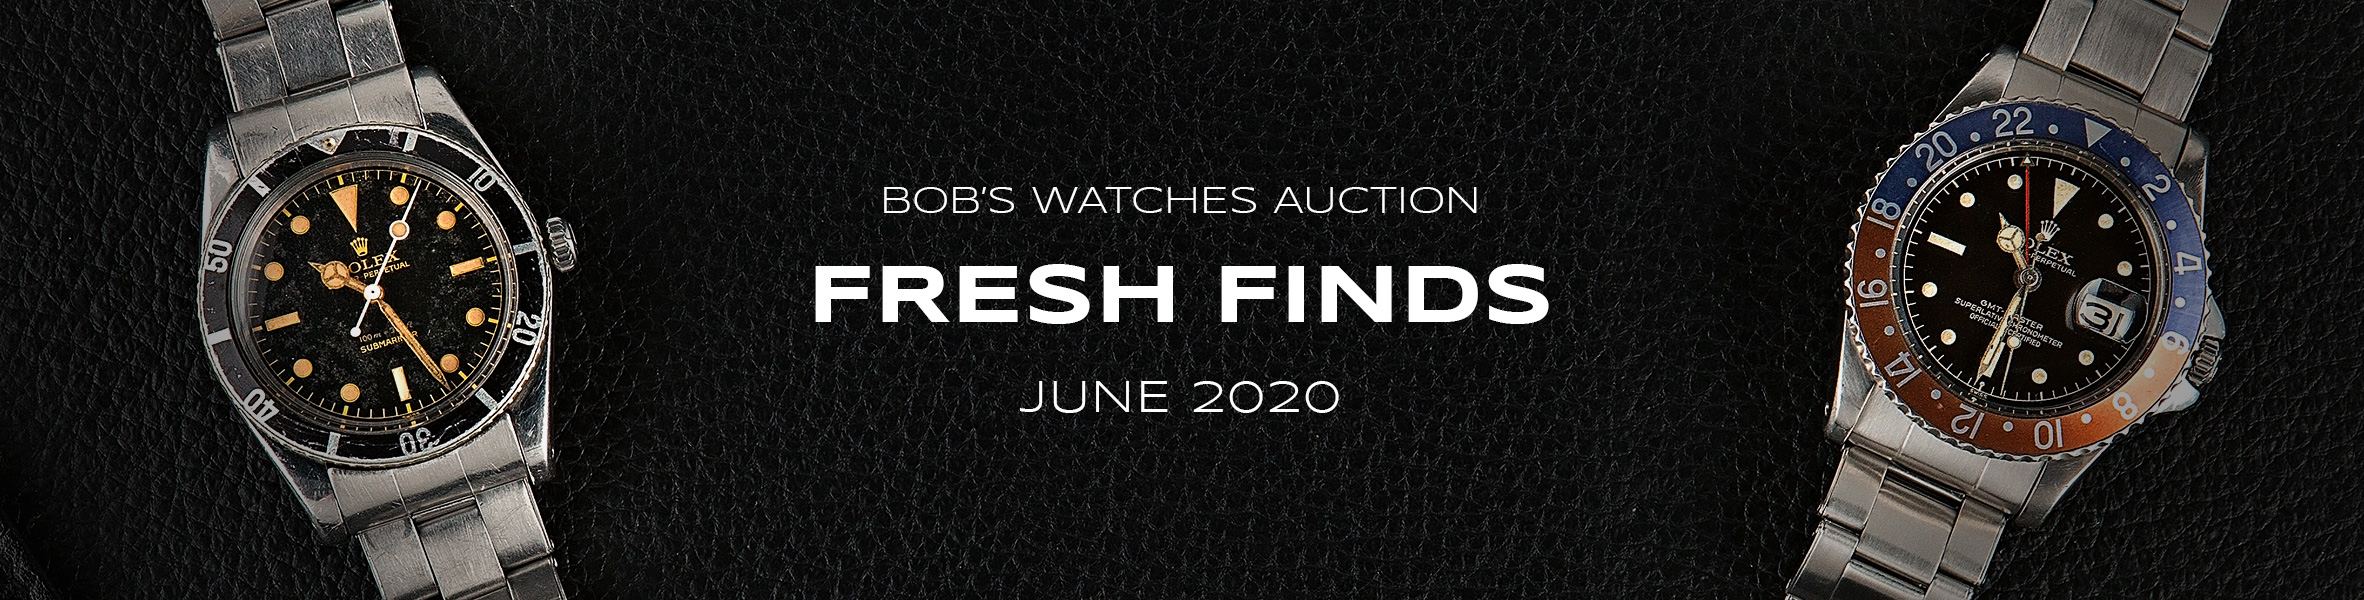 fresh finds rolex auction